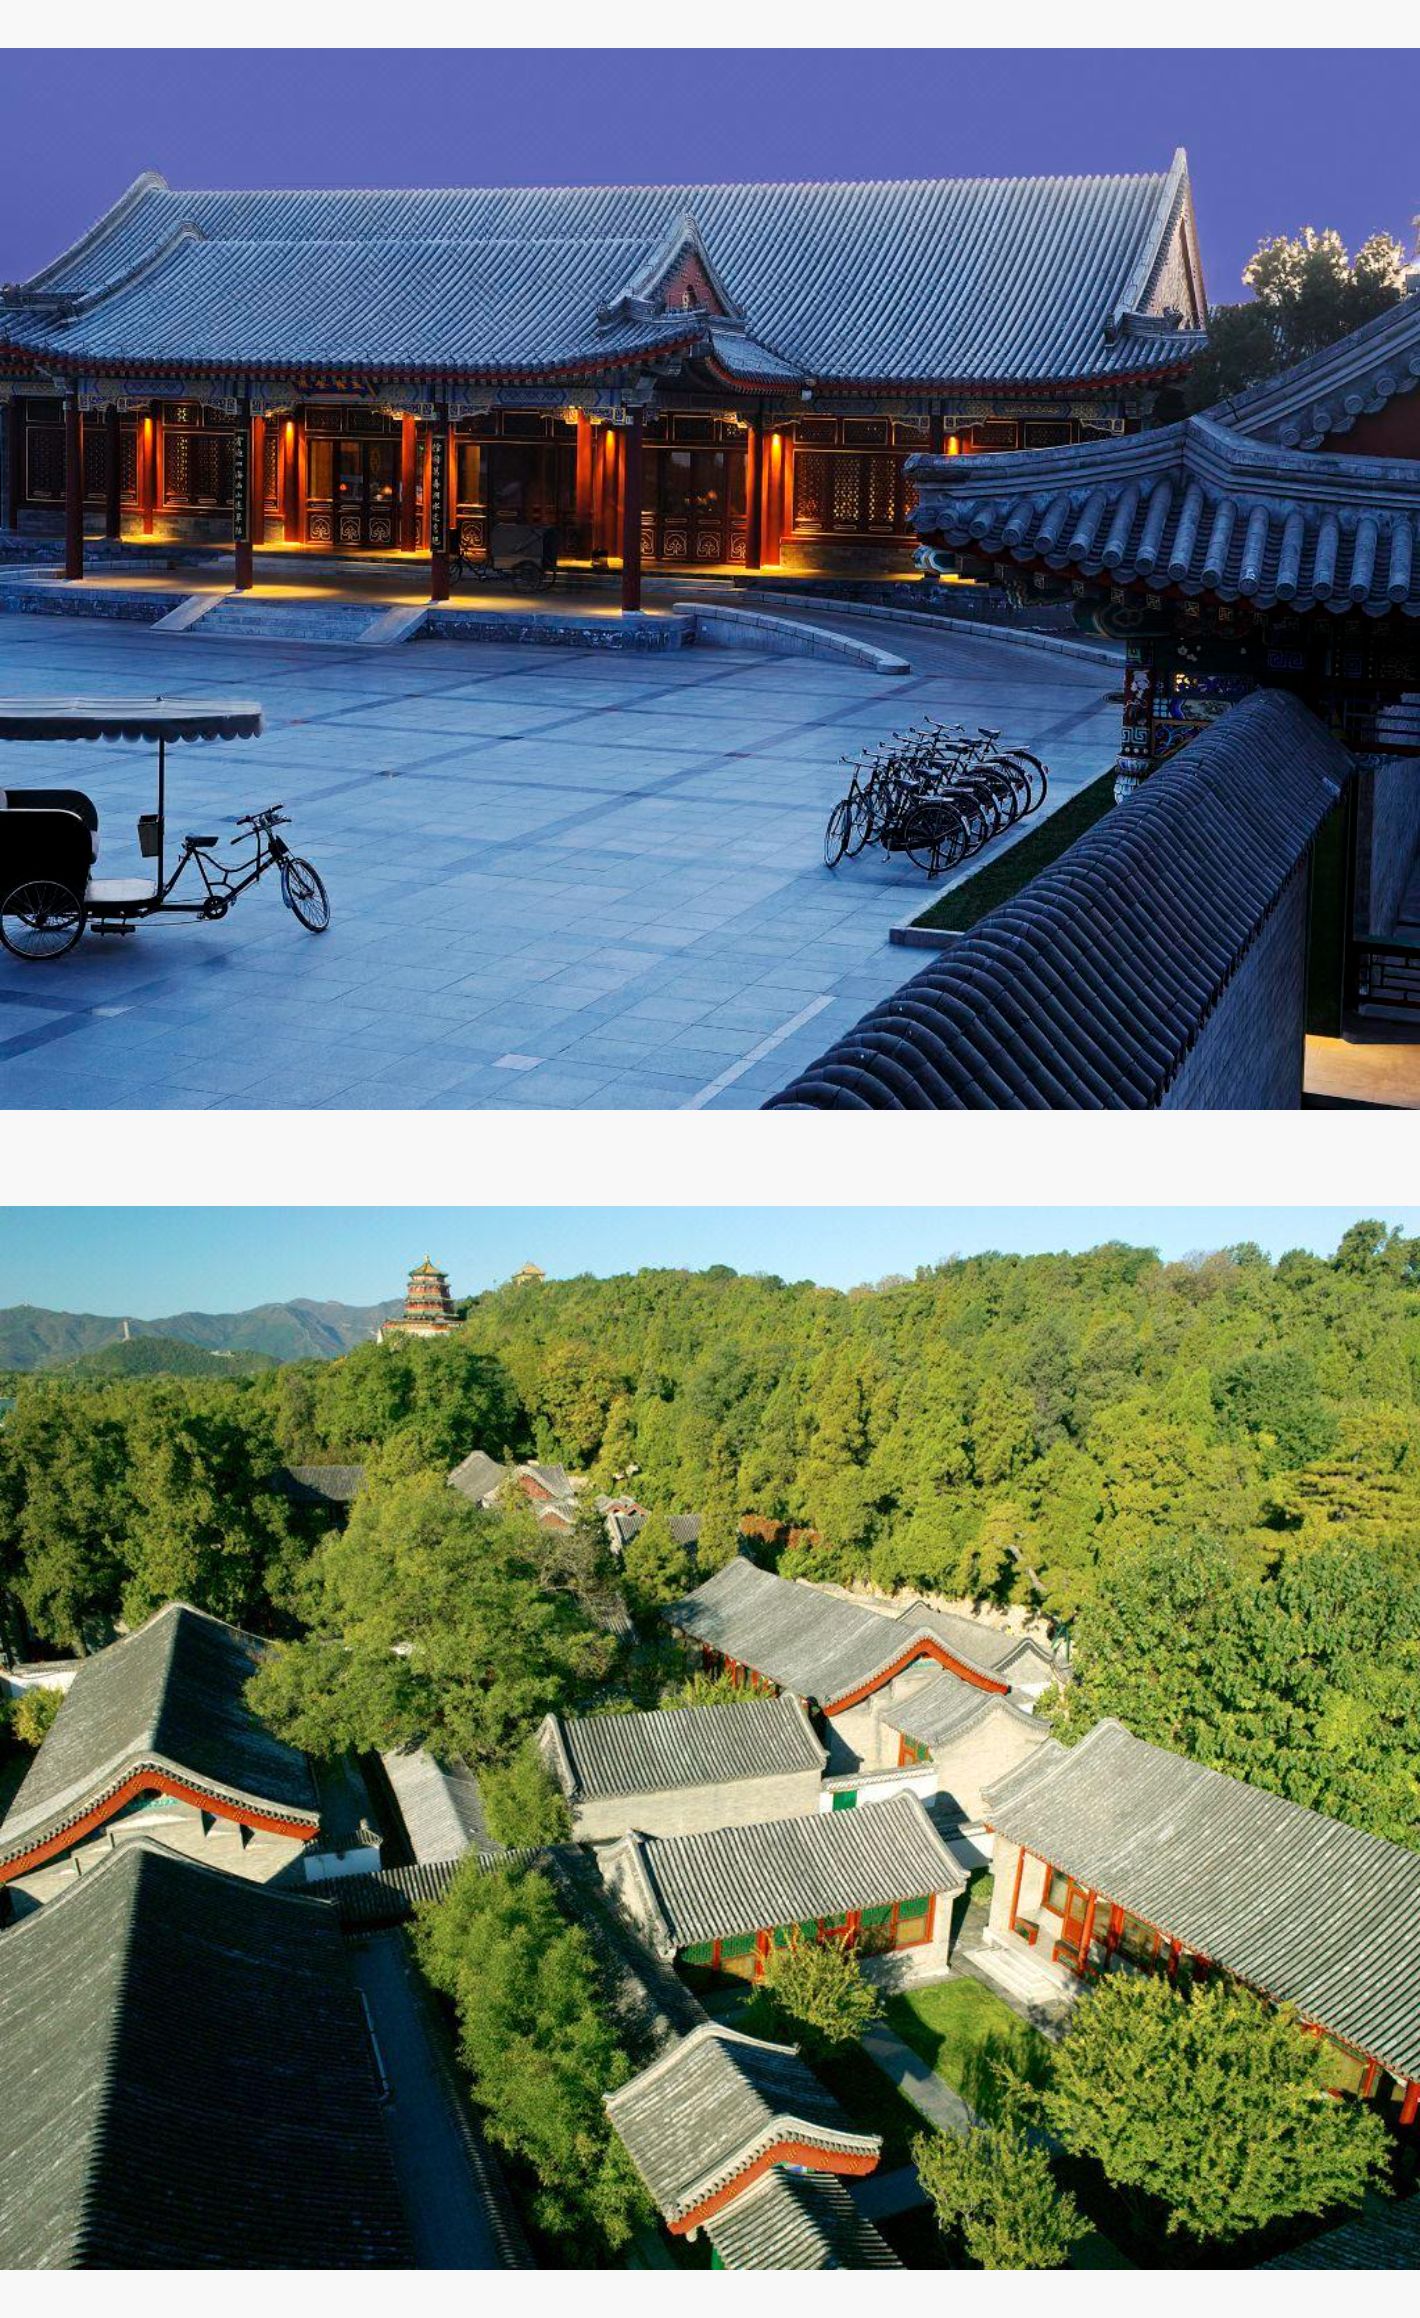 五一假期专属2天1晚北京颐和安缦传统庭院风格百年历史建筑享安缦私人